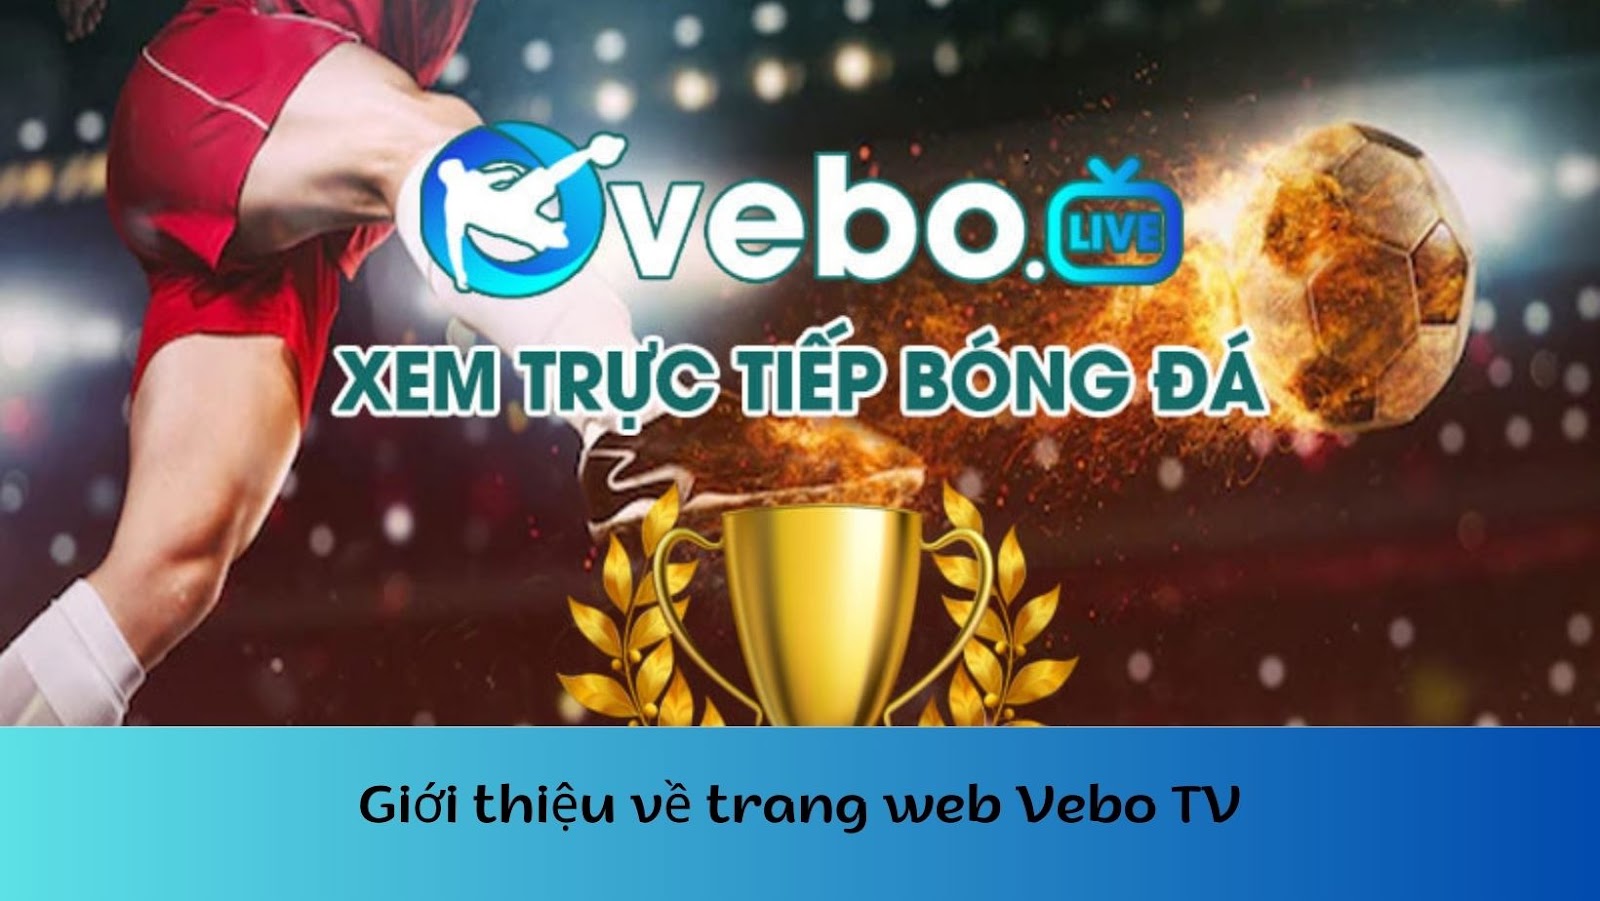 Trang web Vebo TV - Xem live bóng đá hấp dẫn miễn phí tại nhà-1